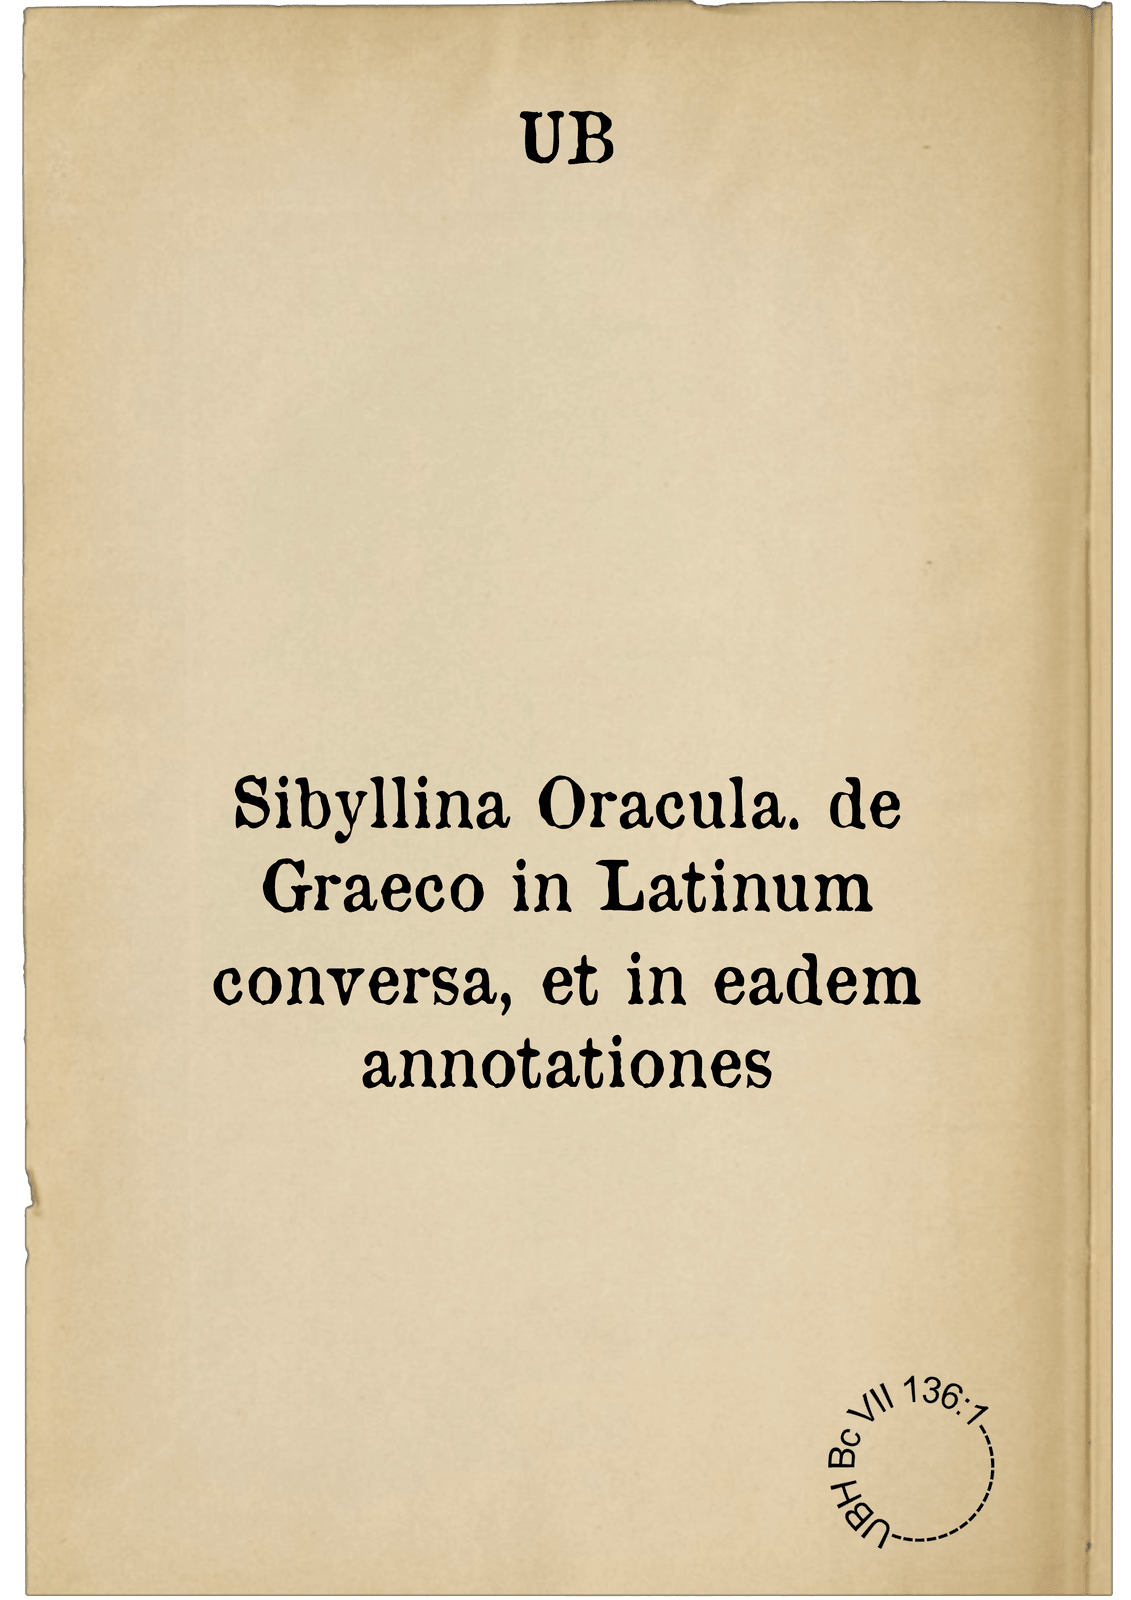 Sibyllina Oracula. de Graeco in Latinum conversa, et in eadem annotationes